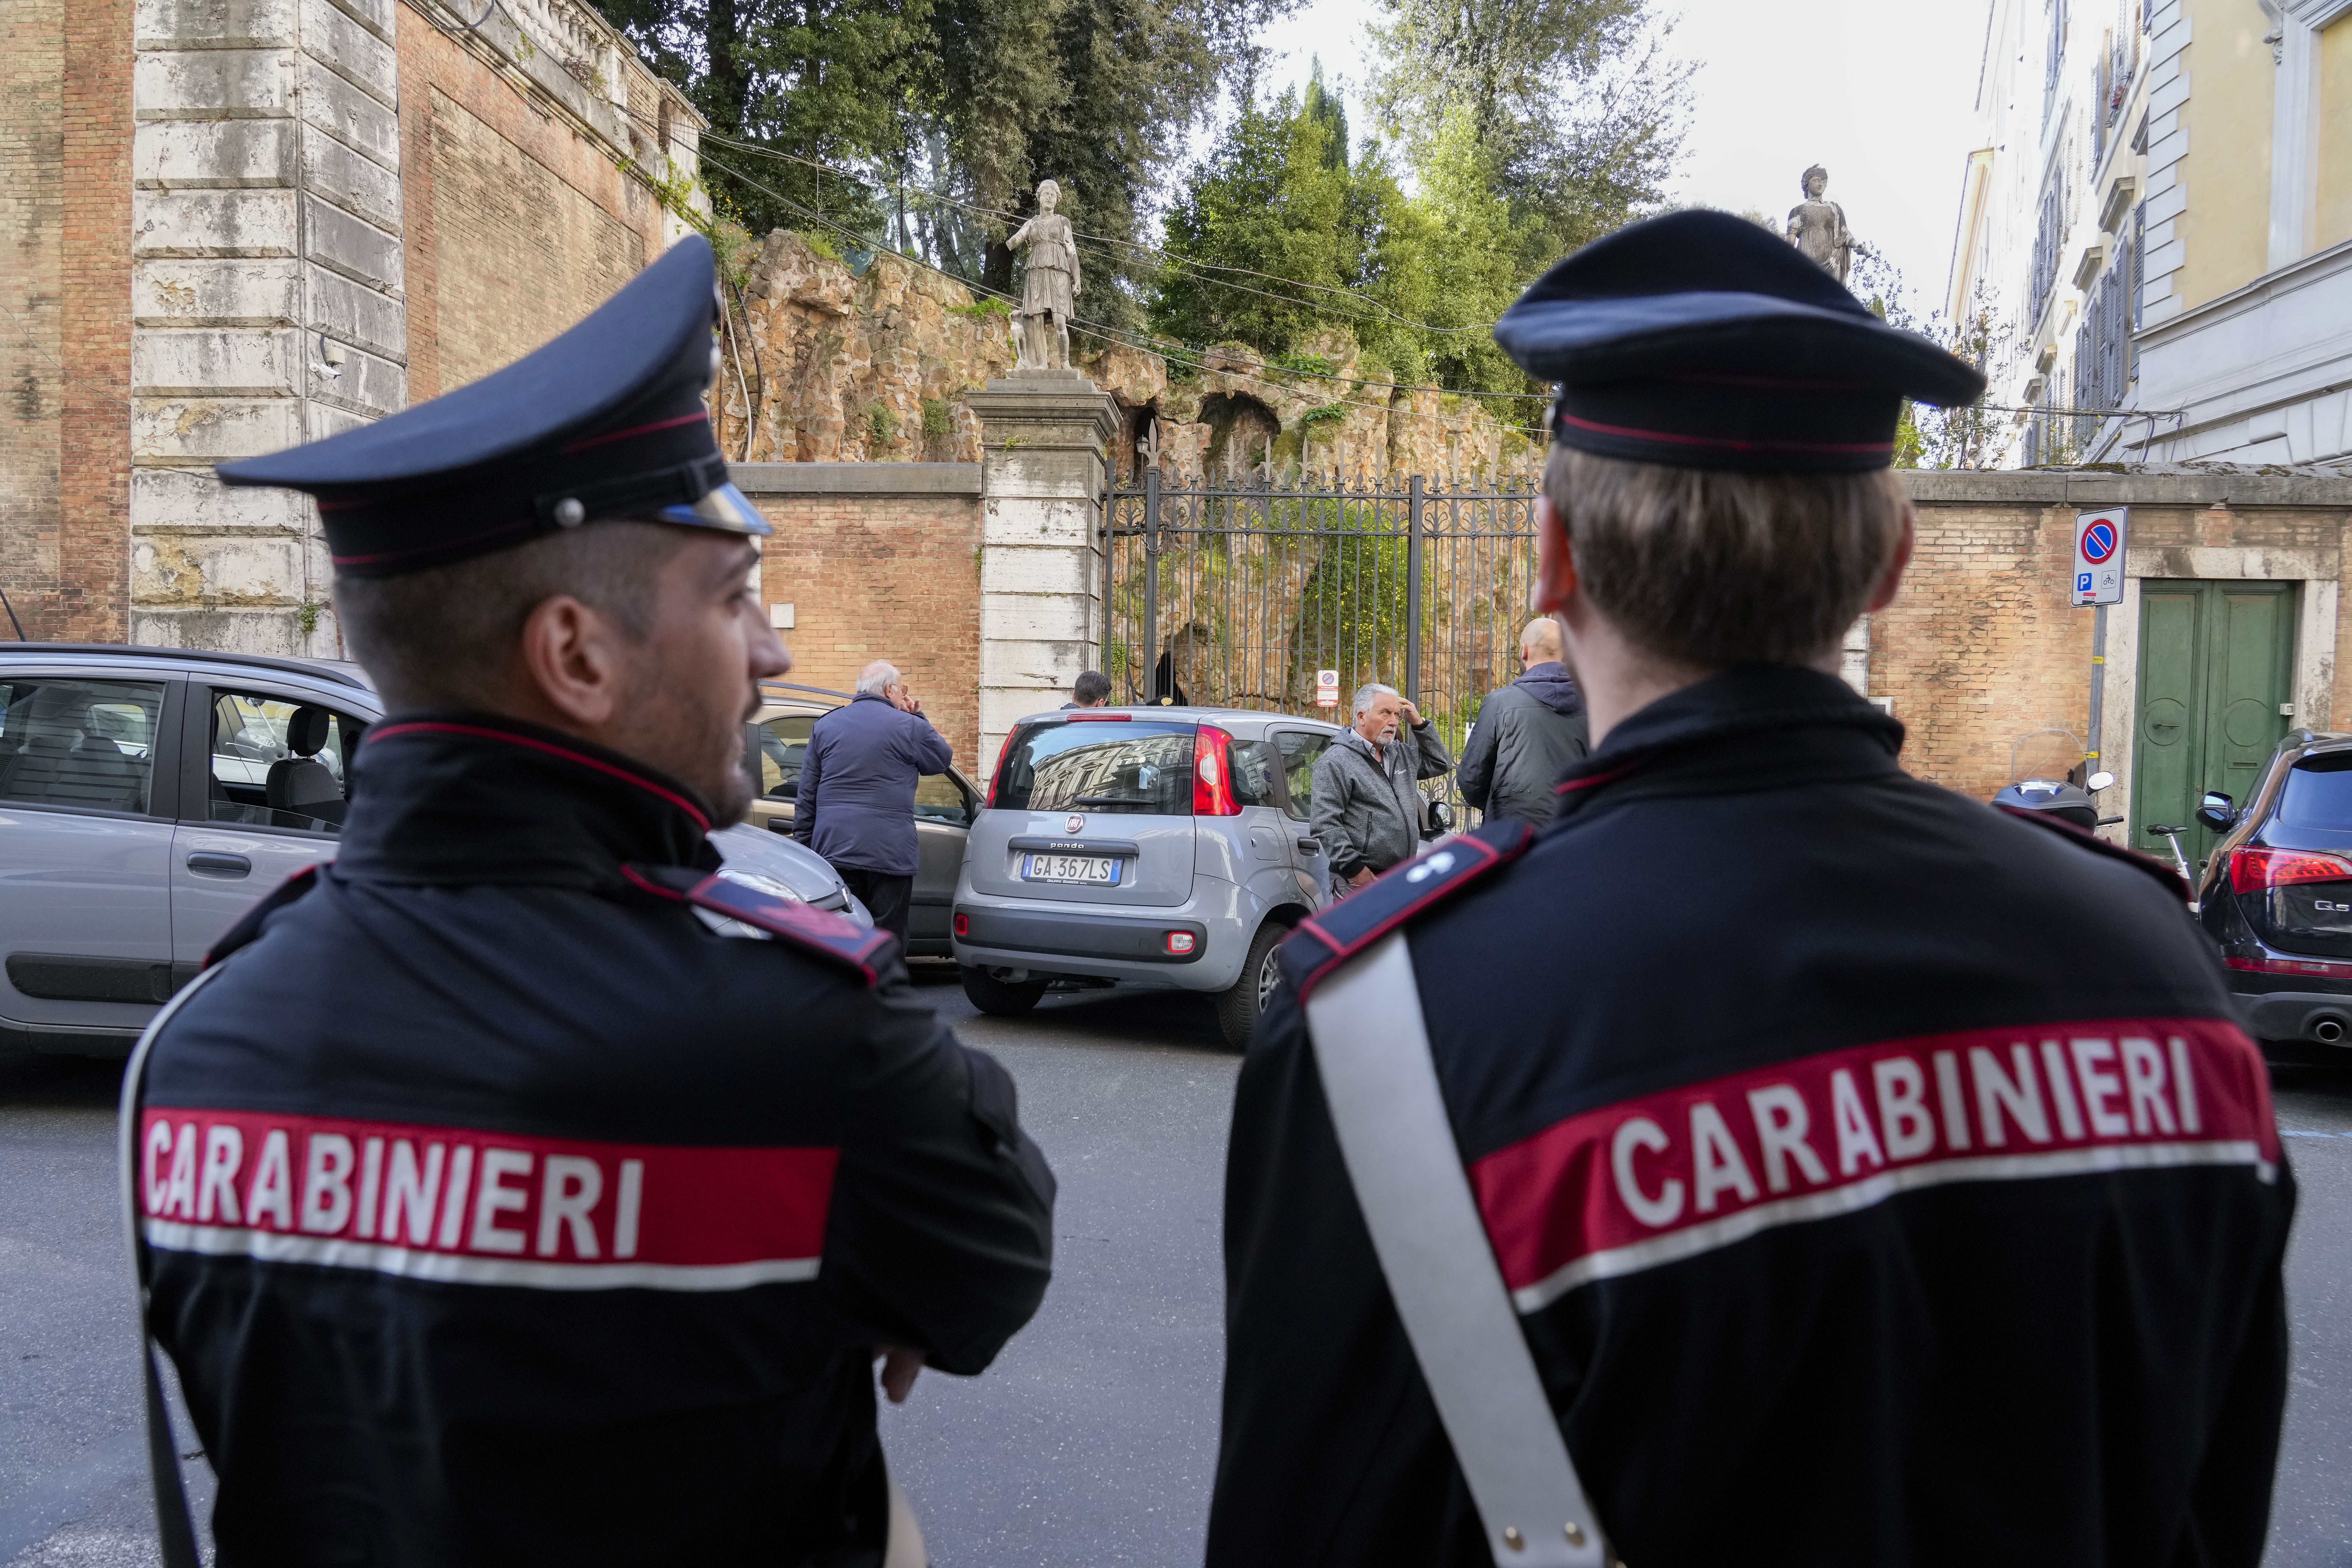 Ιταλία: Άνδρας σκότωσε δύο από τα τρία παιδιά του και τη σύζυγό του – Ένιωθε «δαιμονικές παρουσίες» στο σπίτι